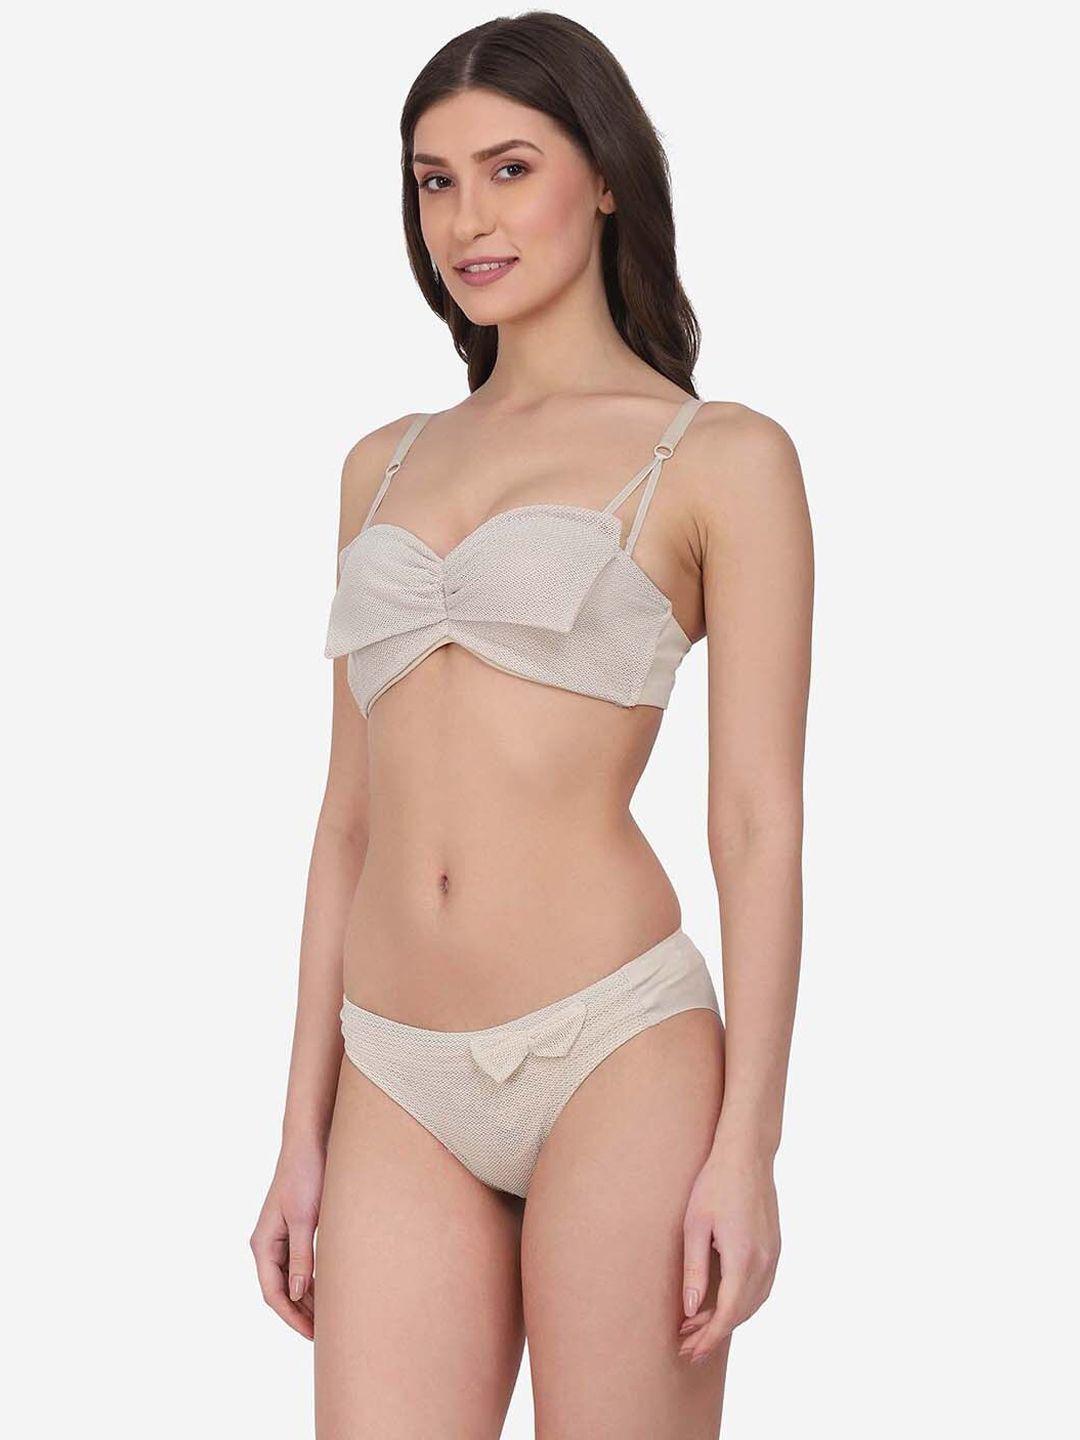 da intimo women beige self design lace lingerie set di-1346 beige-c22